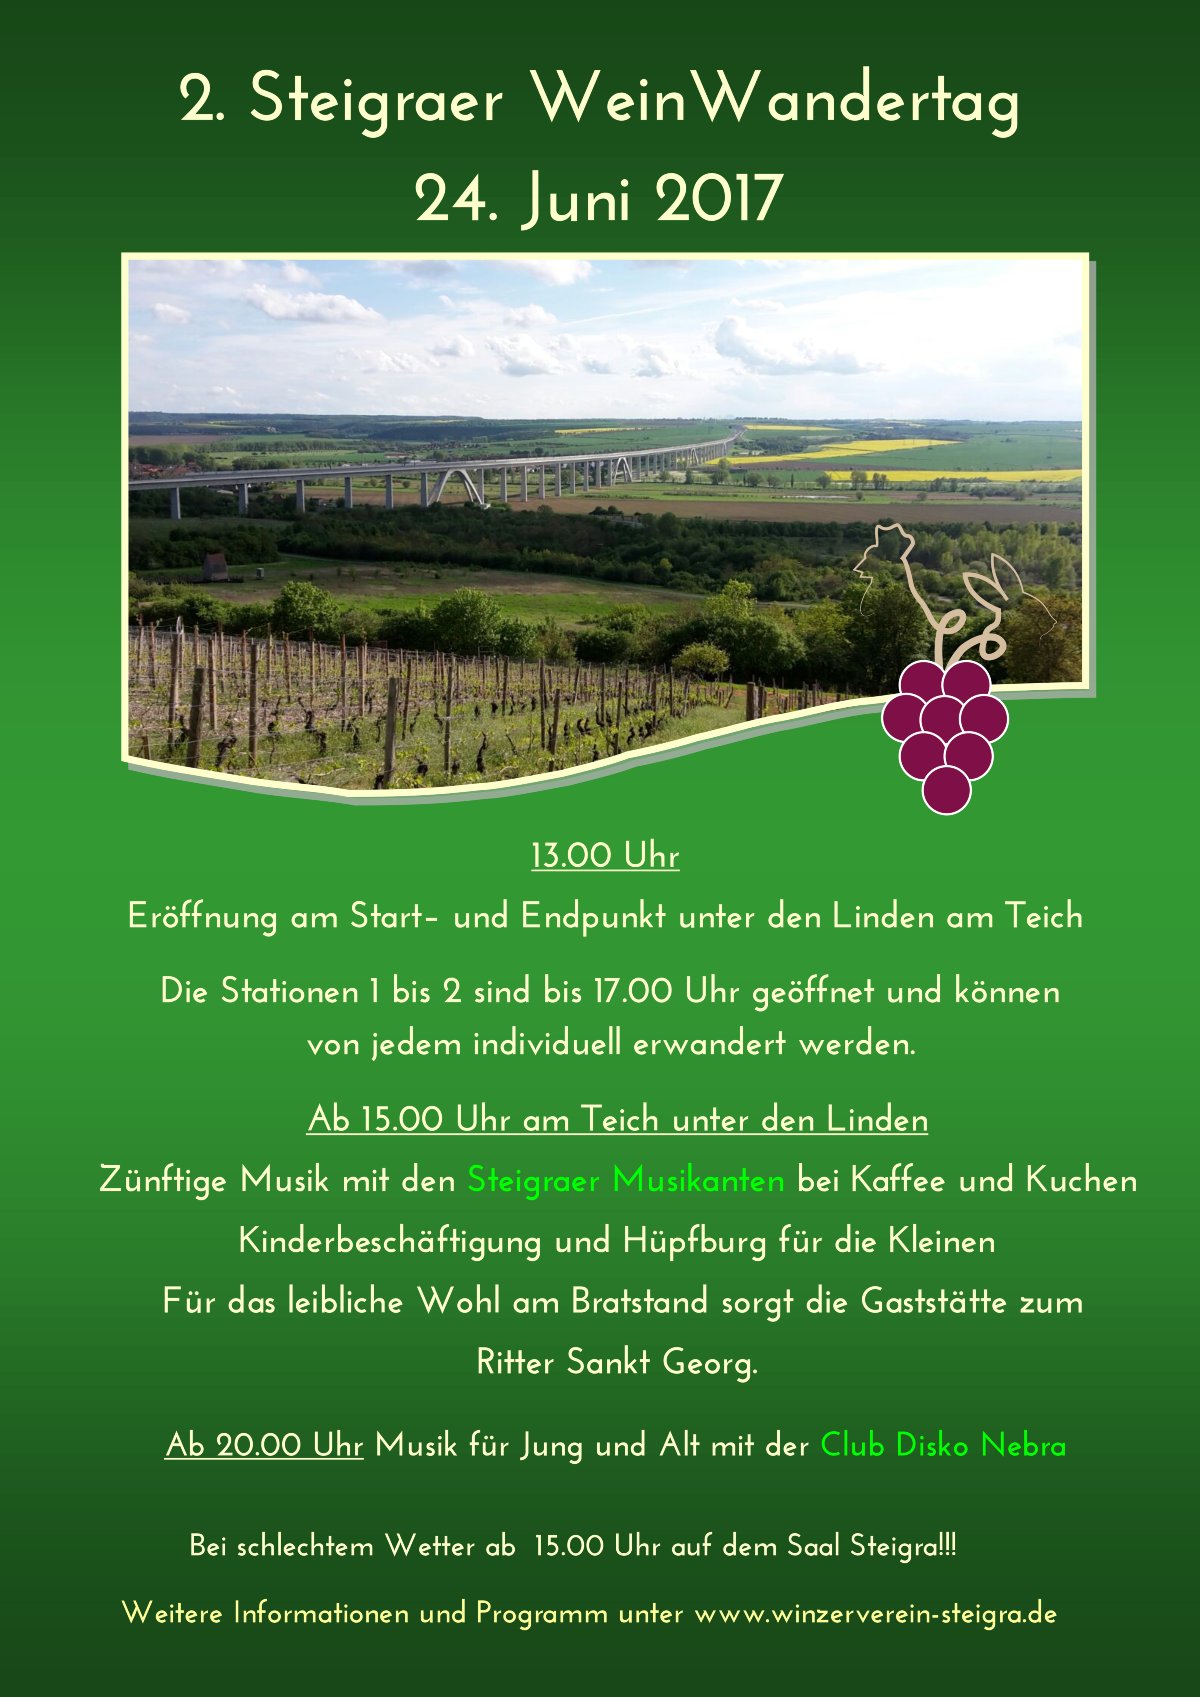 Die Weinwanderung in Steigra am 24. Juni 2017 - und zurck